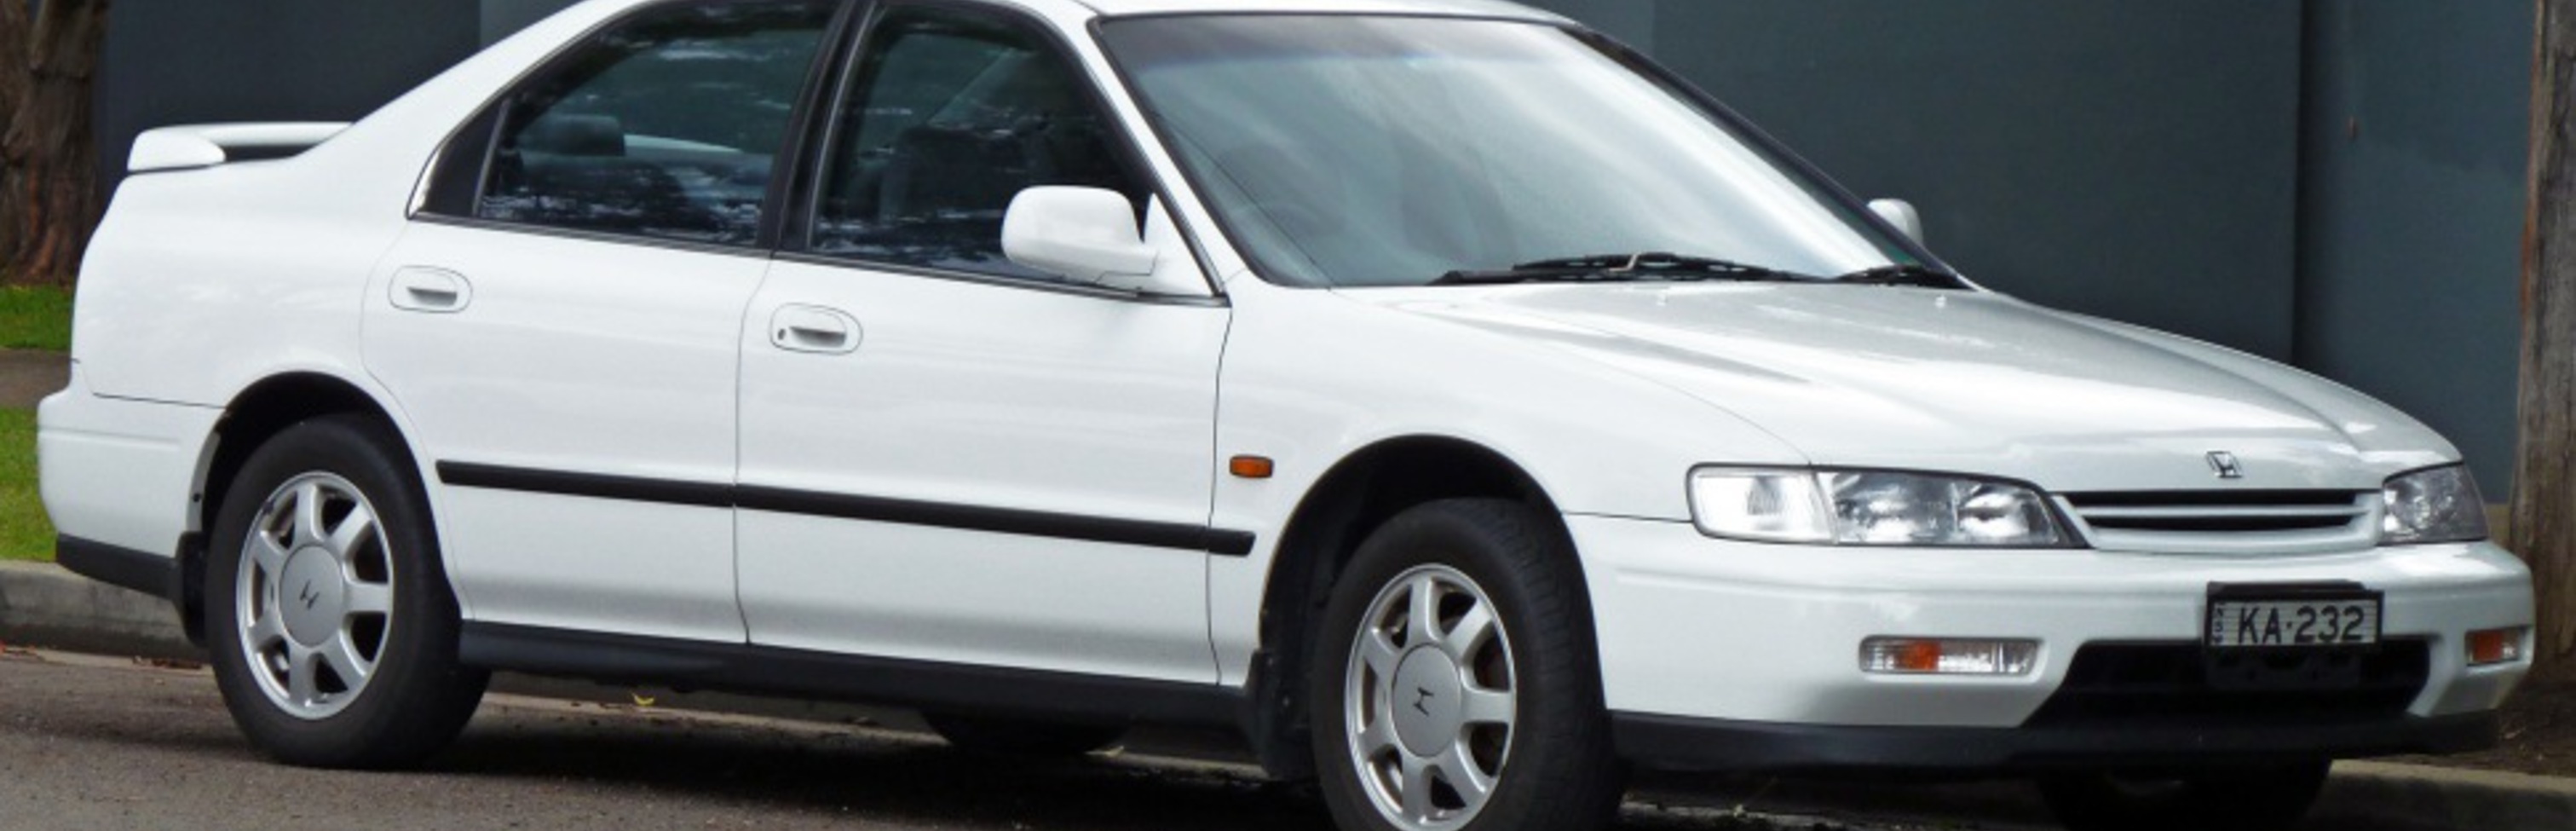 Mua Bán Xe Honda Accord 1994 Giá Rẻ Toàn quốc